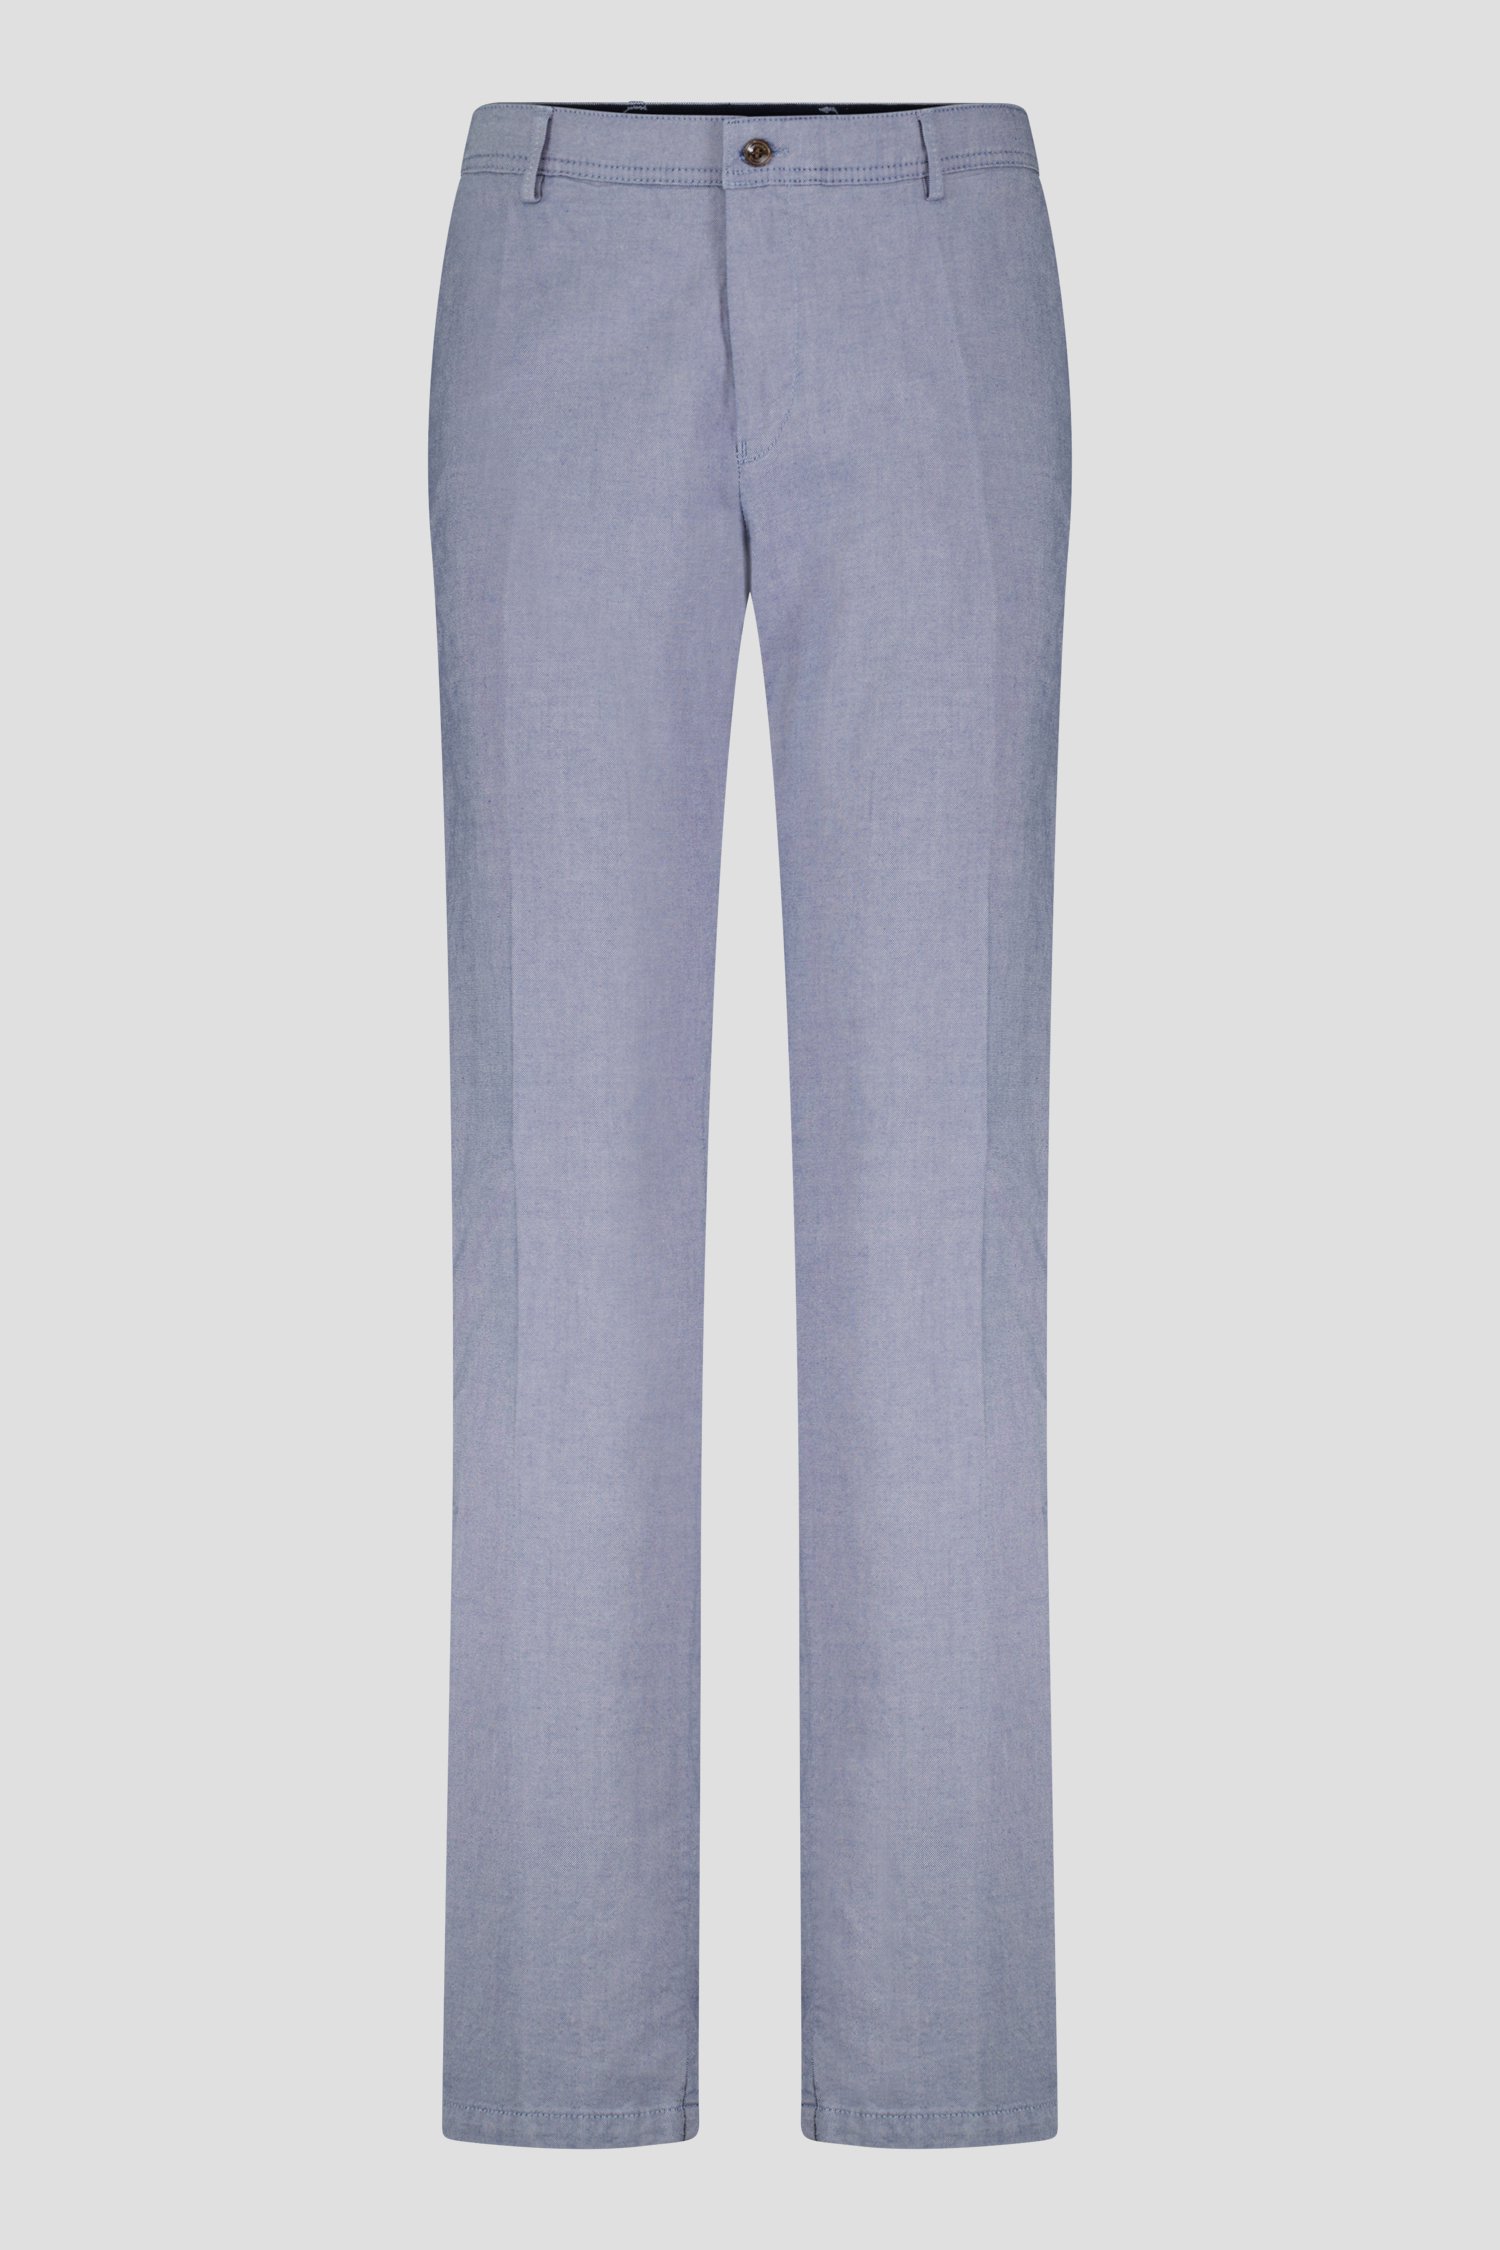 Pantalon bleu moucheté - New York - Slim fit de Brassville pour Hommes